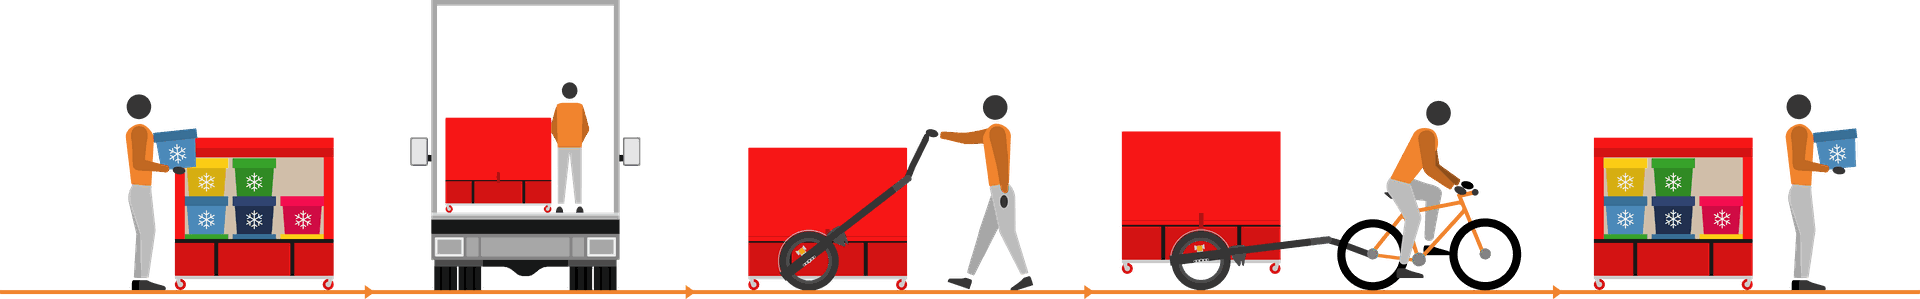 Frise illustrant le processus de livraison à vélo avec un conteneur isotherme XL9